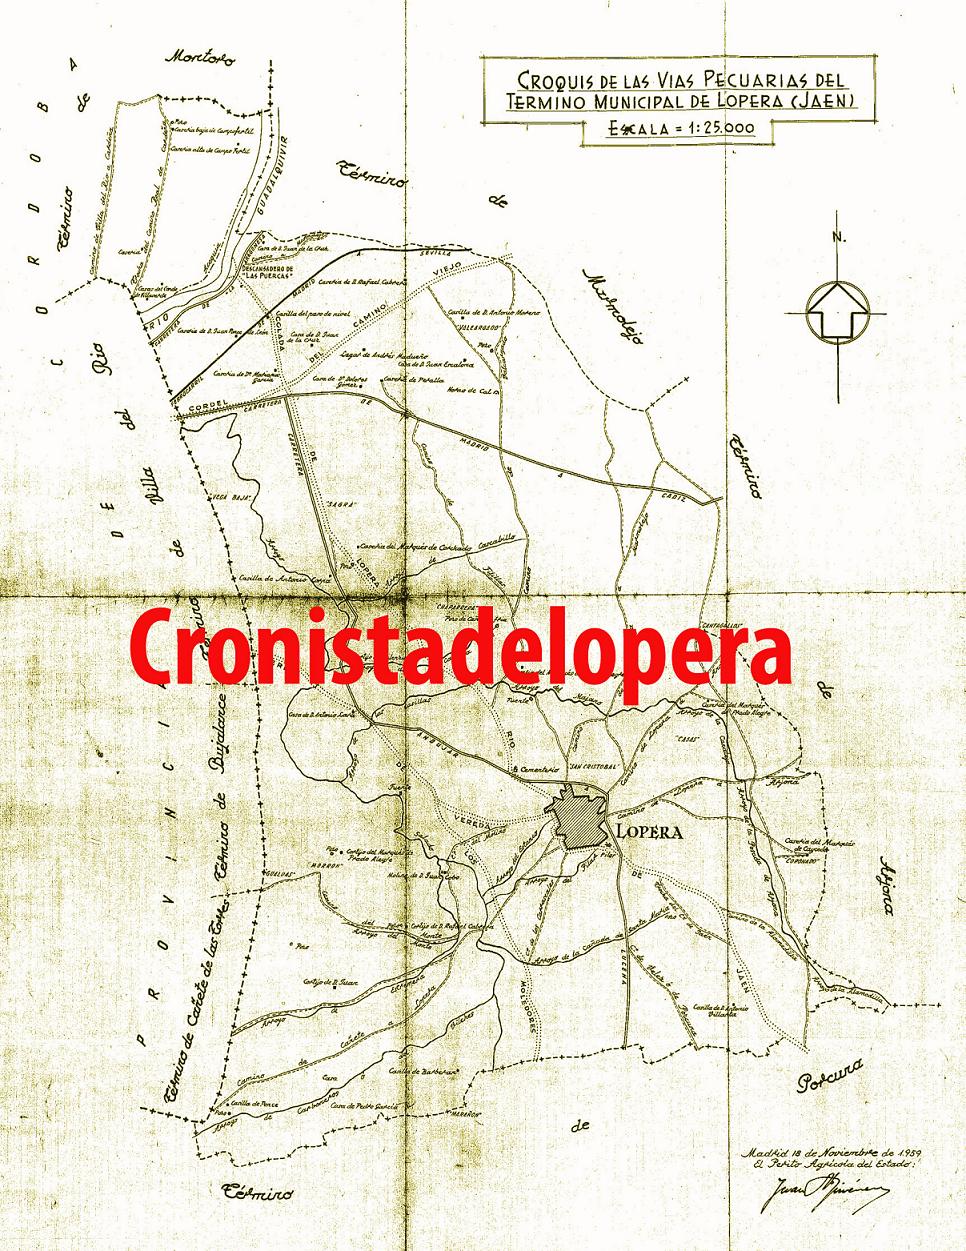 Plano original de las Vías Pecuarias del término Municipal de Lopera en 1959